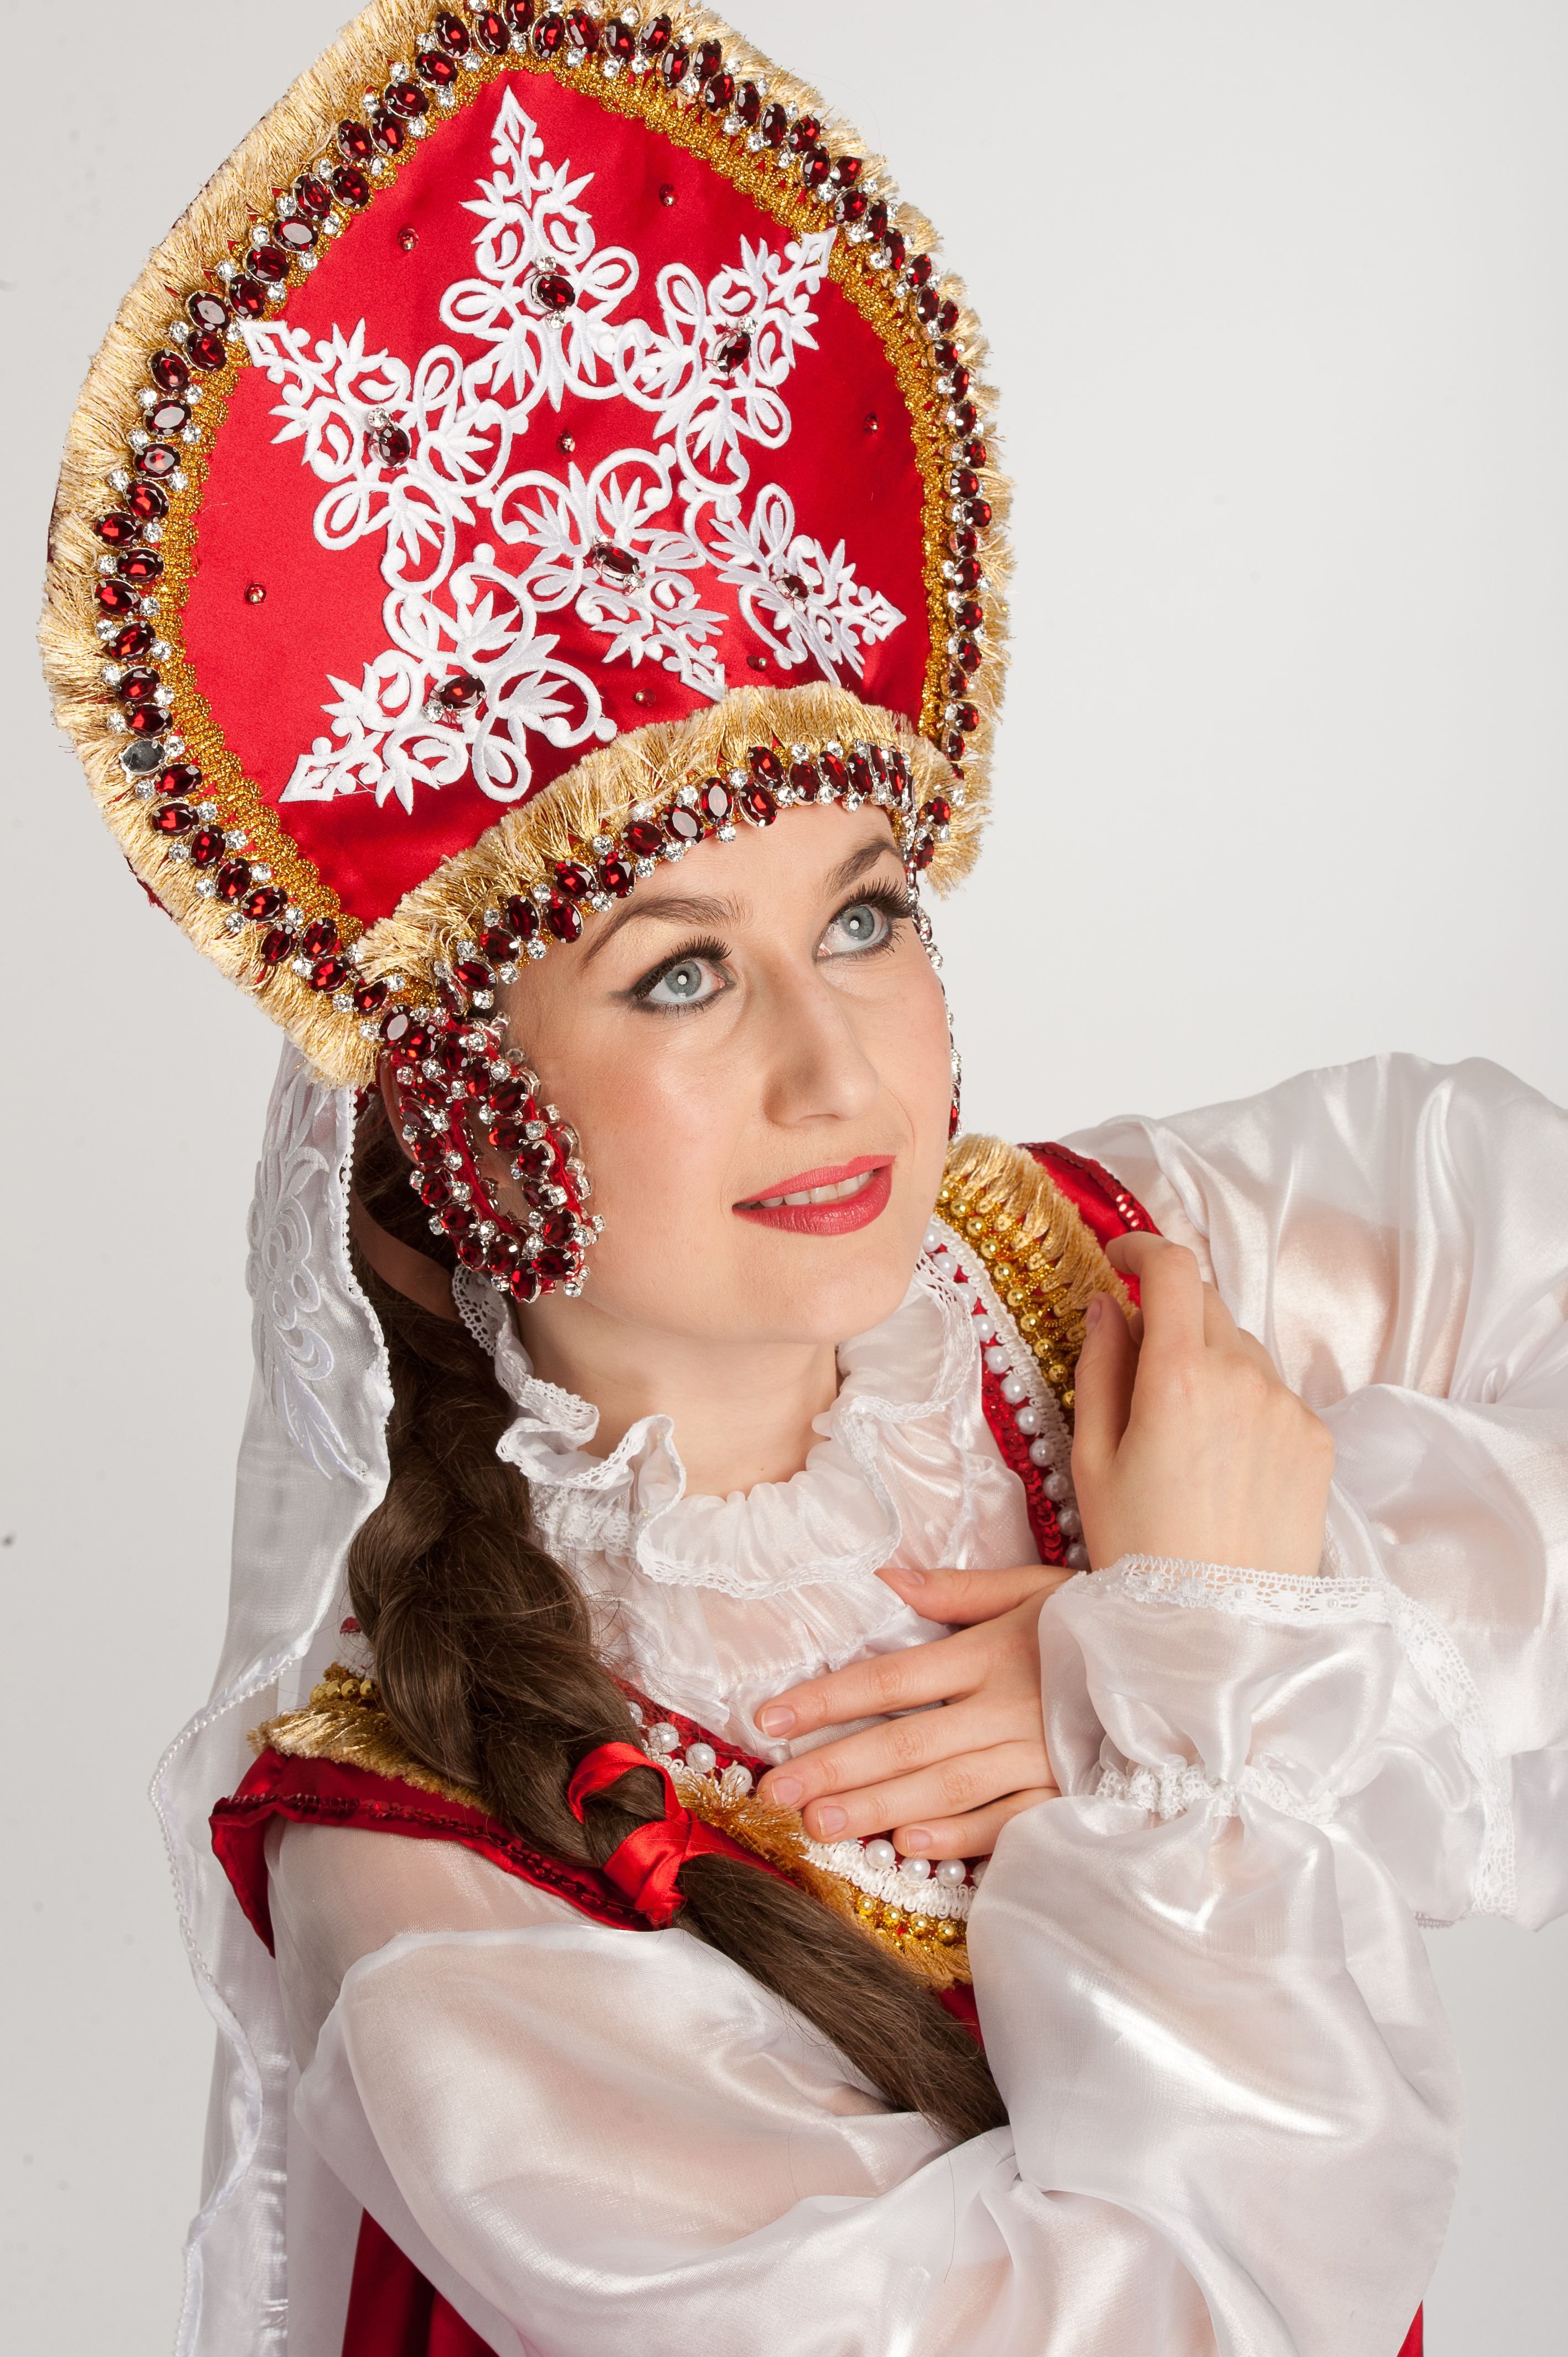 Фото в русской одежде красавицы национальной